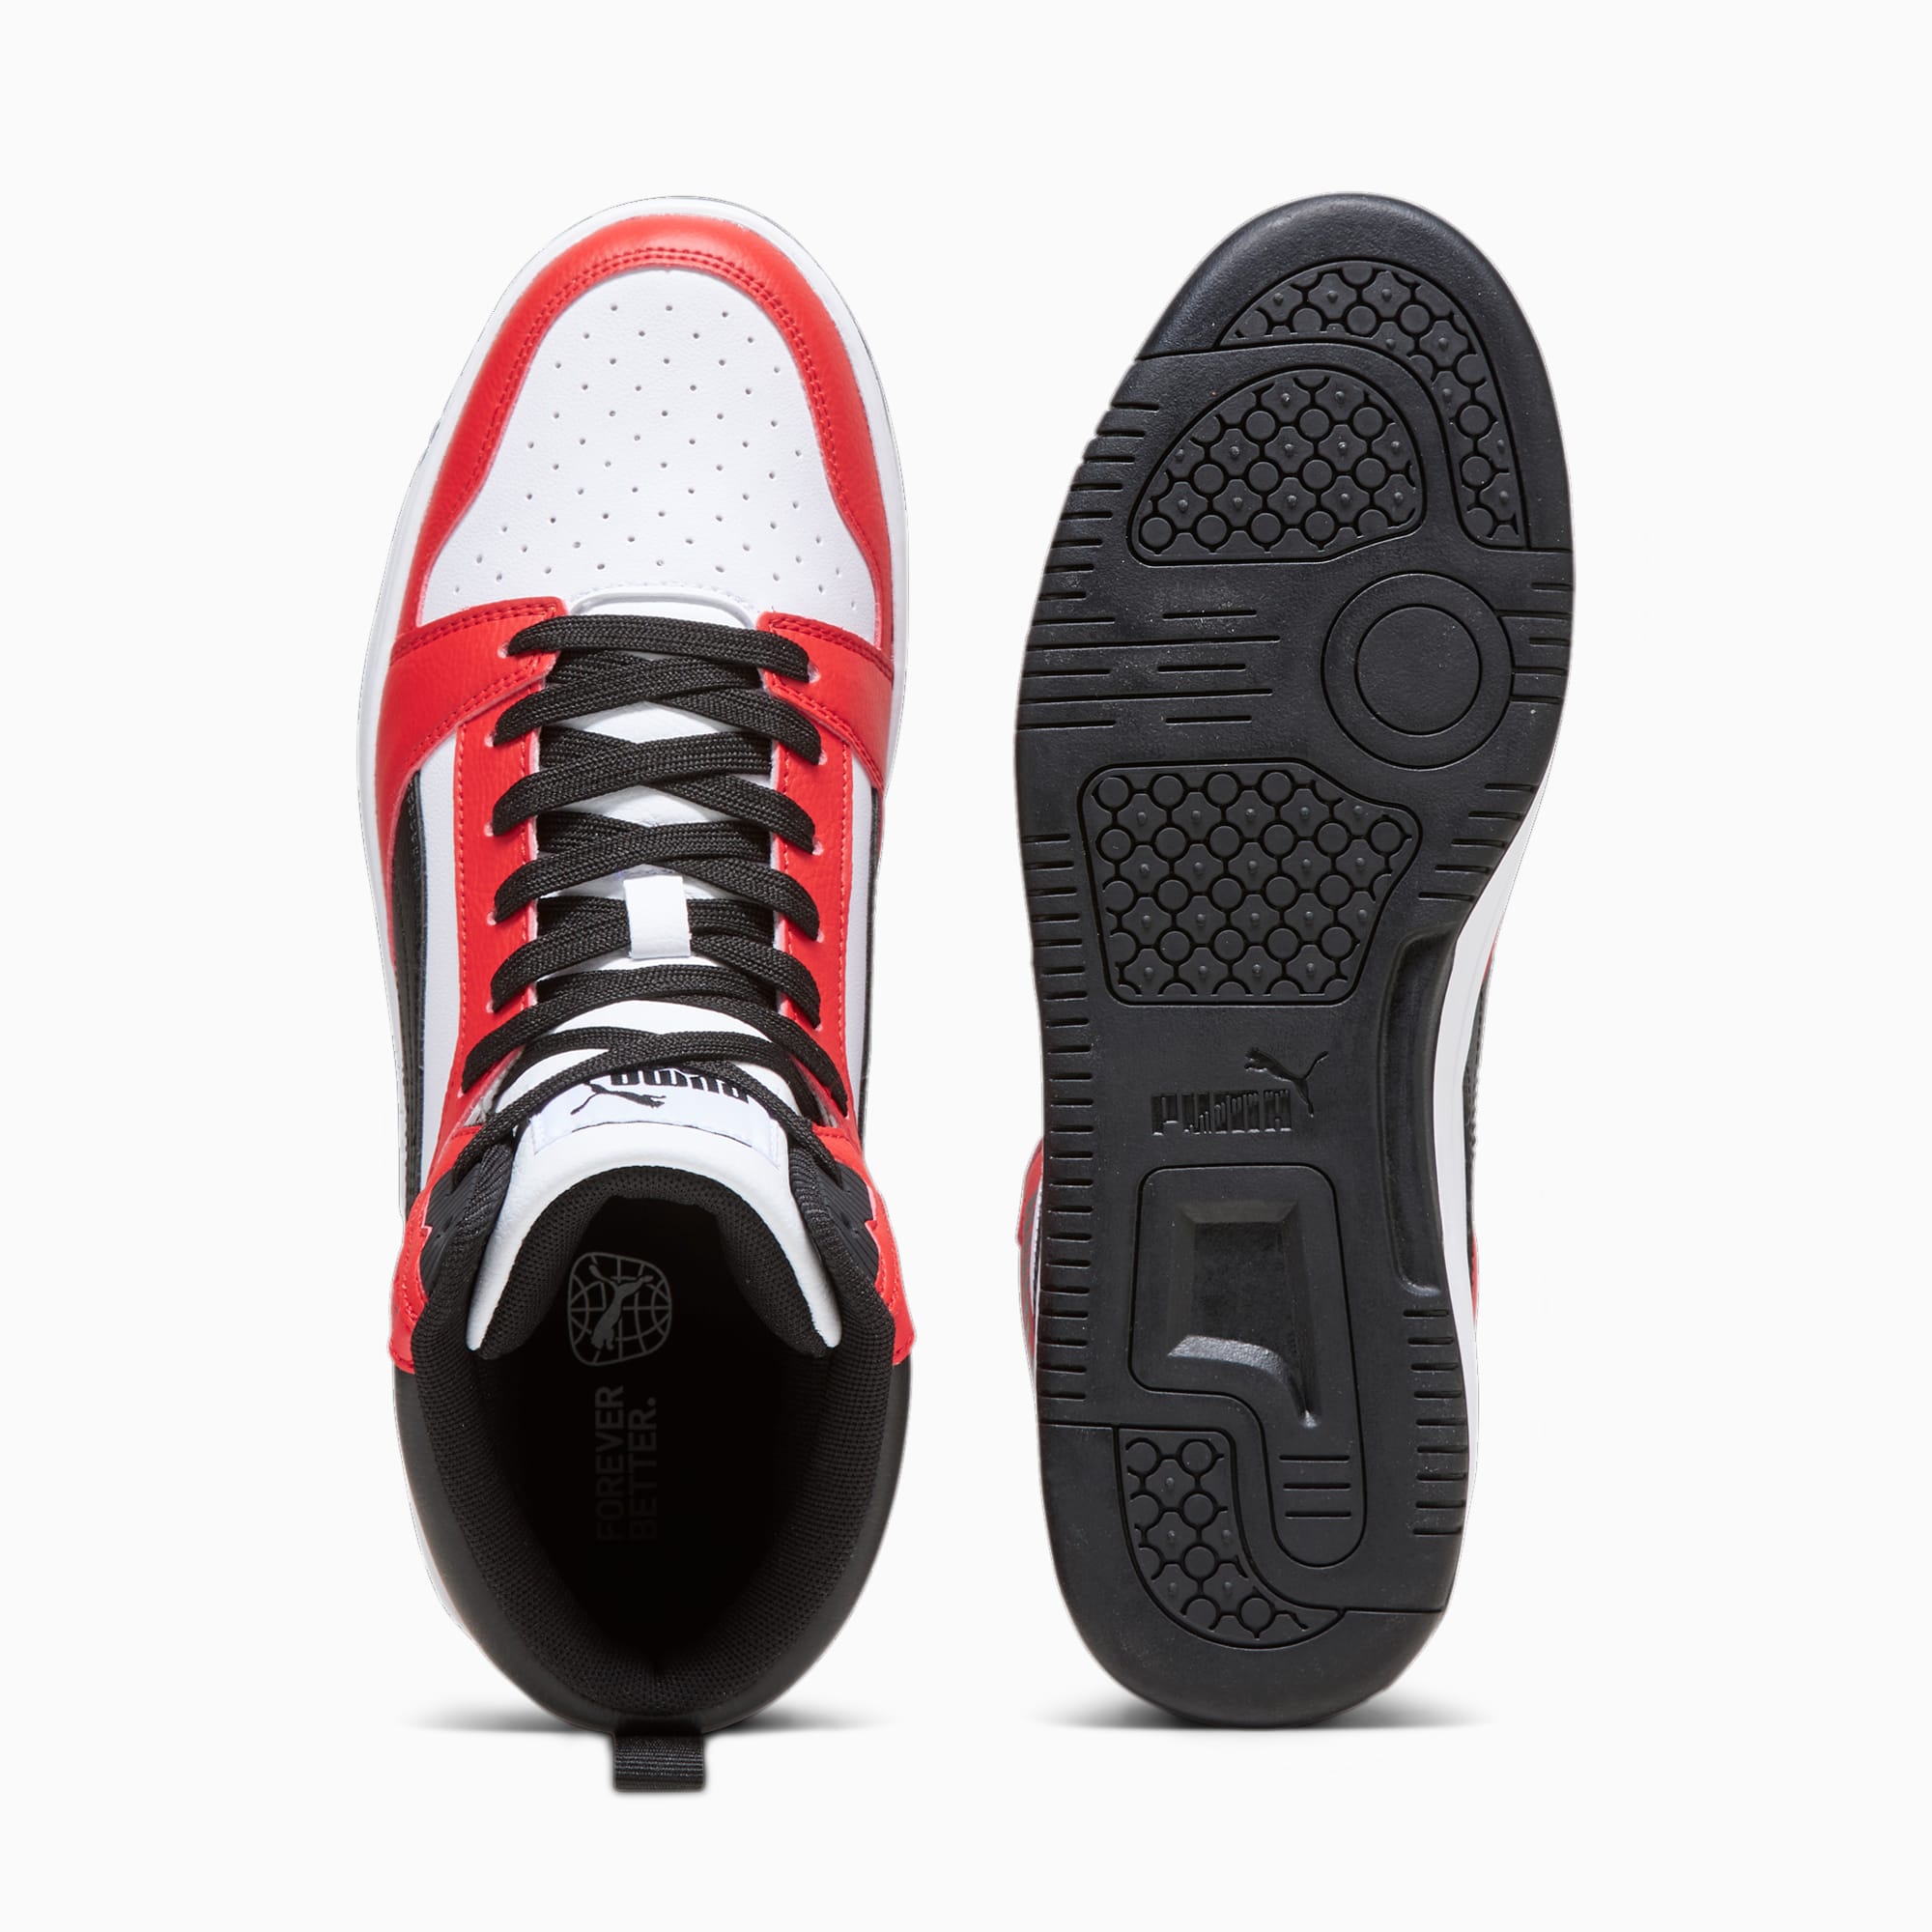 PUMA Sneakersy Rebound, Czarny / Biały / Czerwony